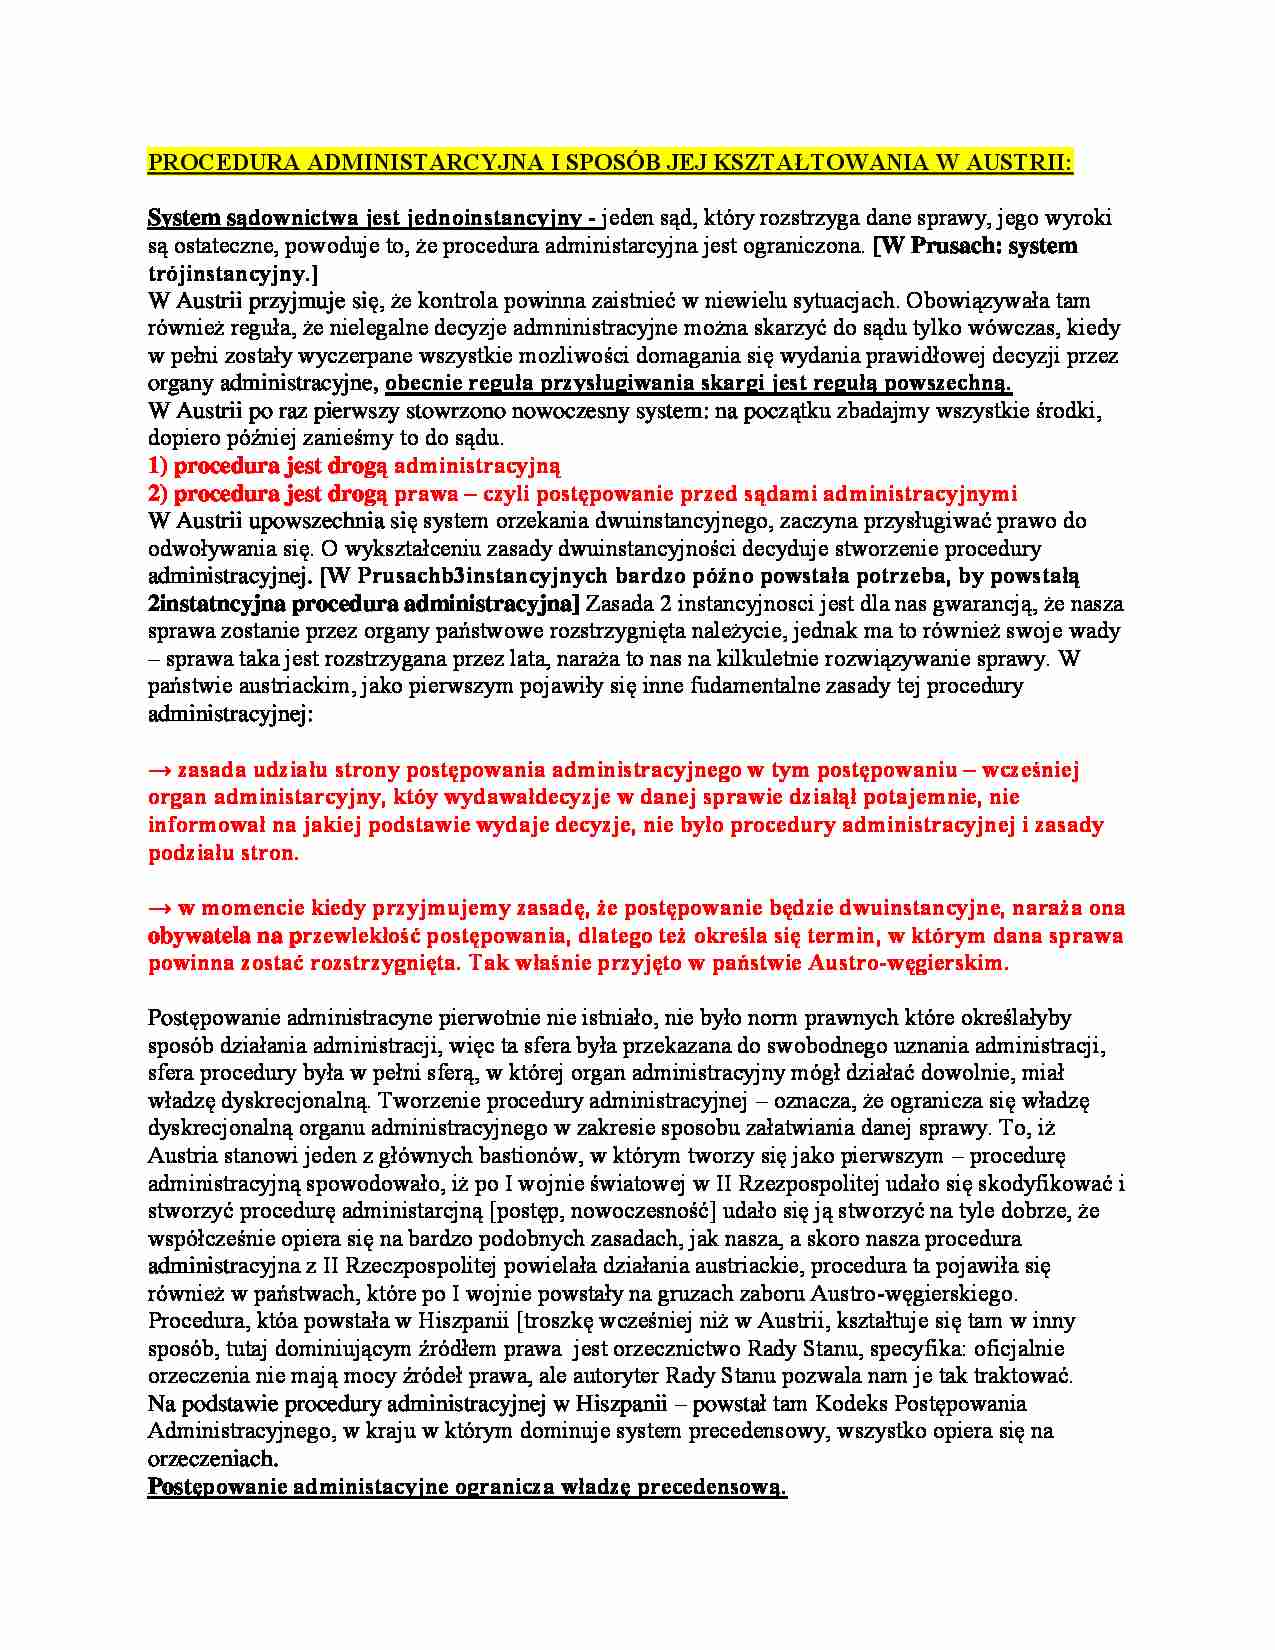 Wykład - procedura administracyjna Austrii - strona 1